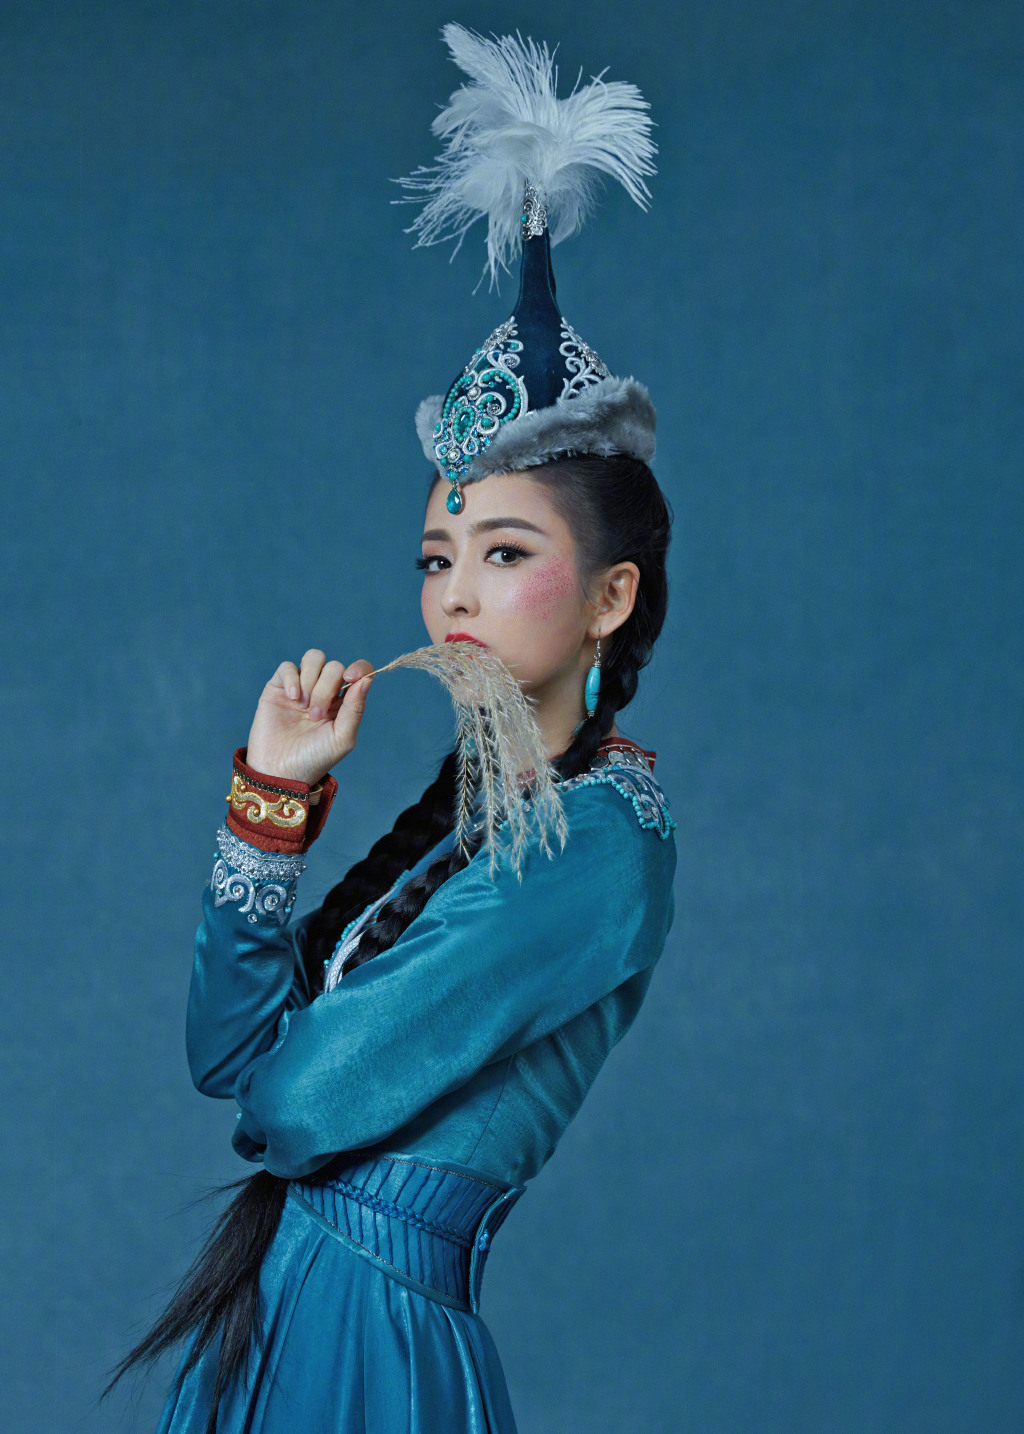 佟丽娅民族风造型曝光,可爱的高原红传递多姿风情